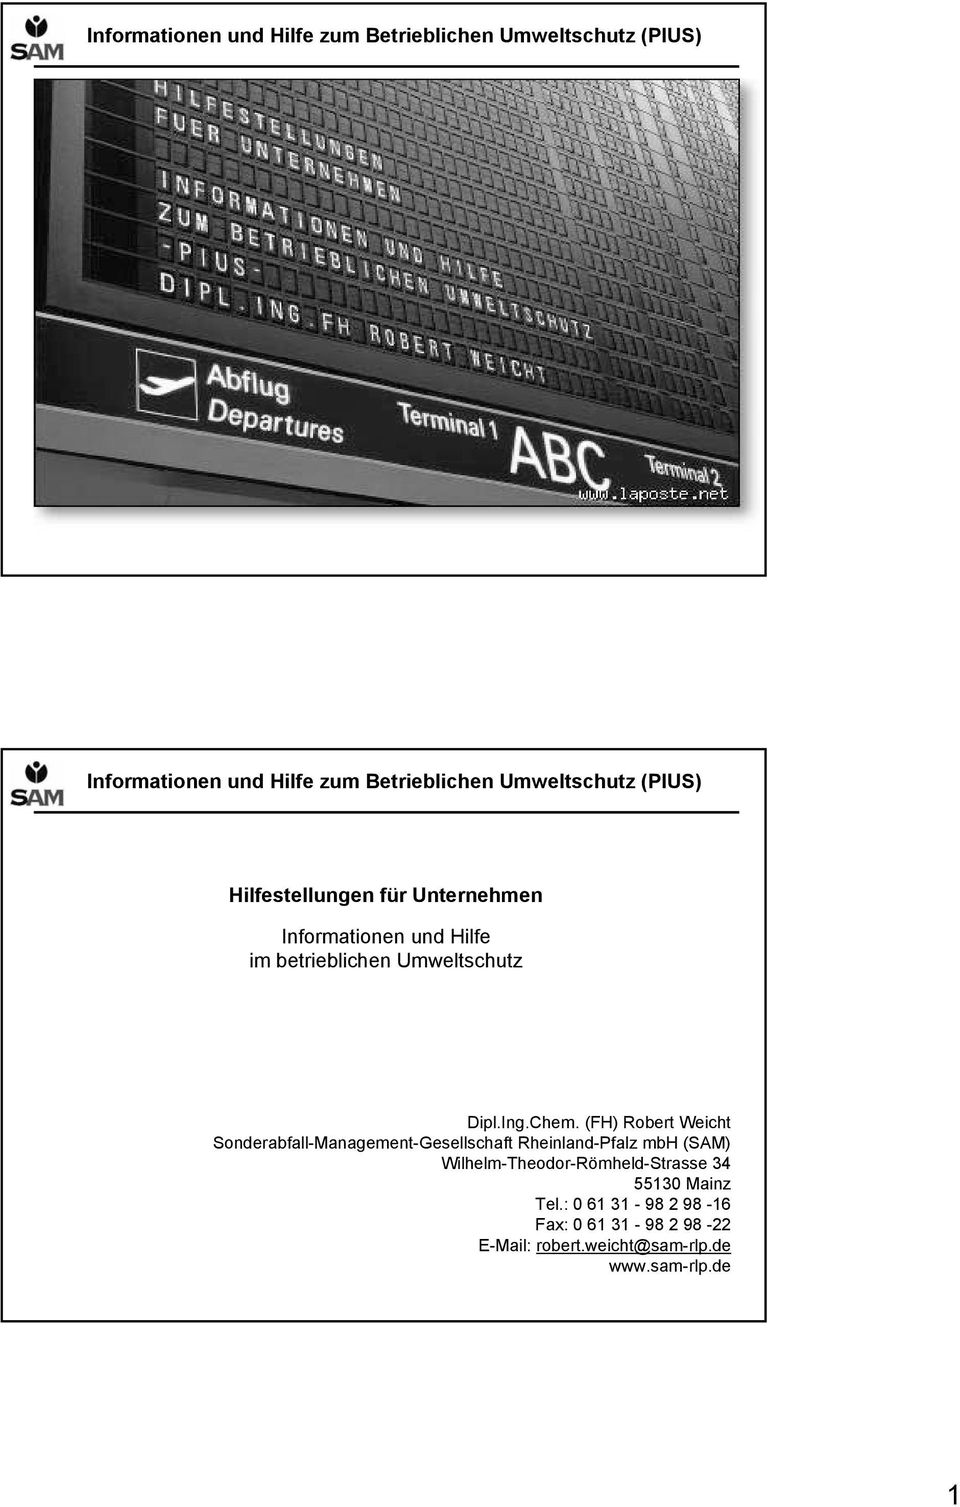 (FH) Robert Weicht Sonderabfall-Management-Gesellschaft Rheinland-Pfalz mbh (SAM)